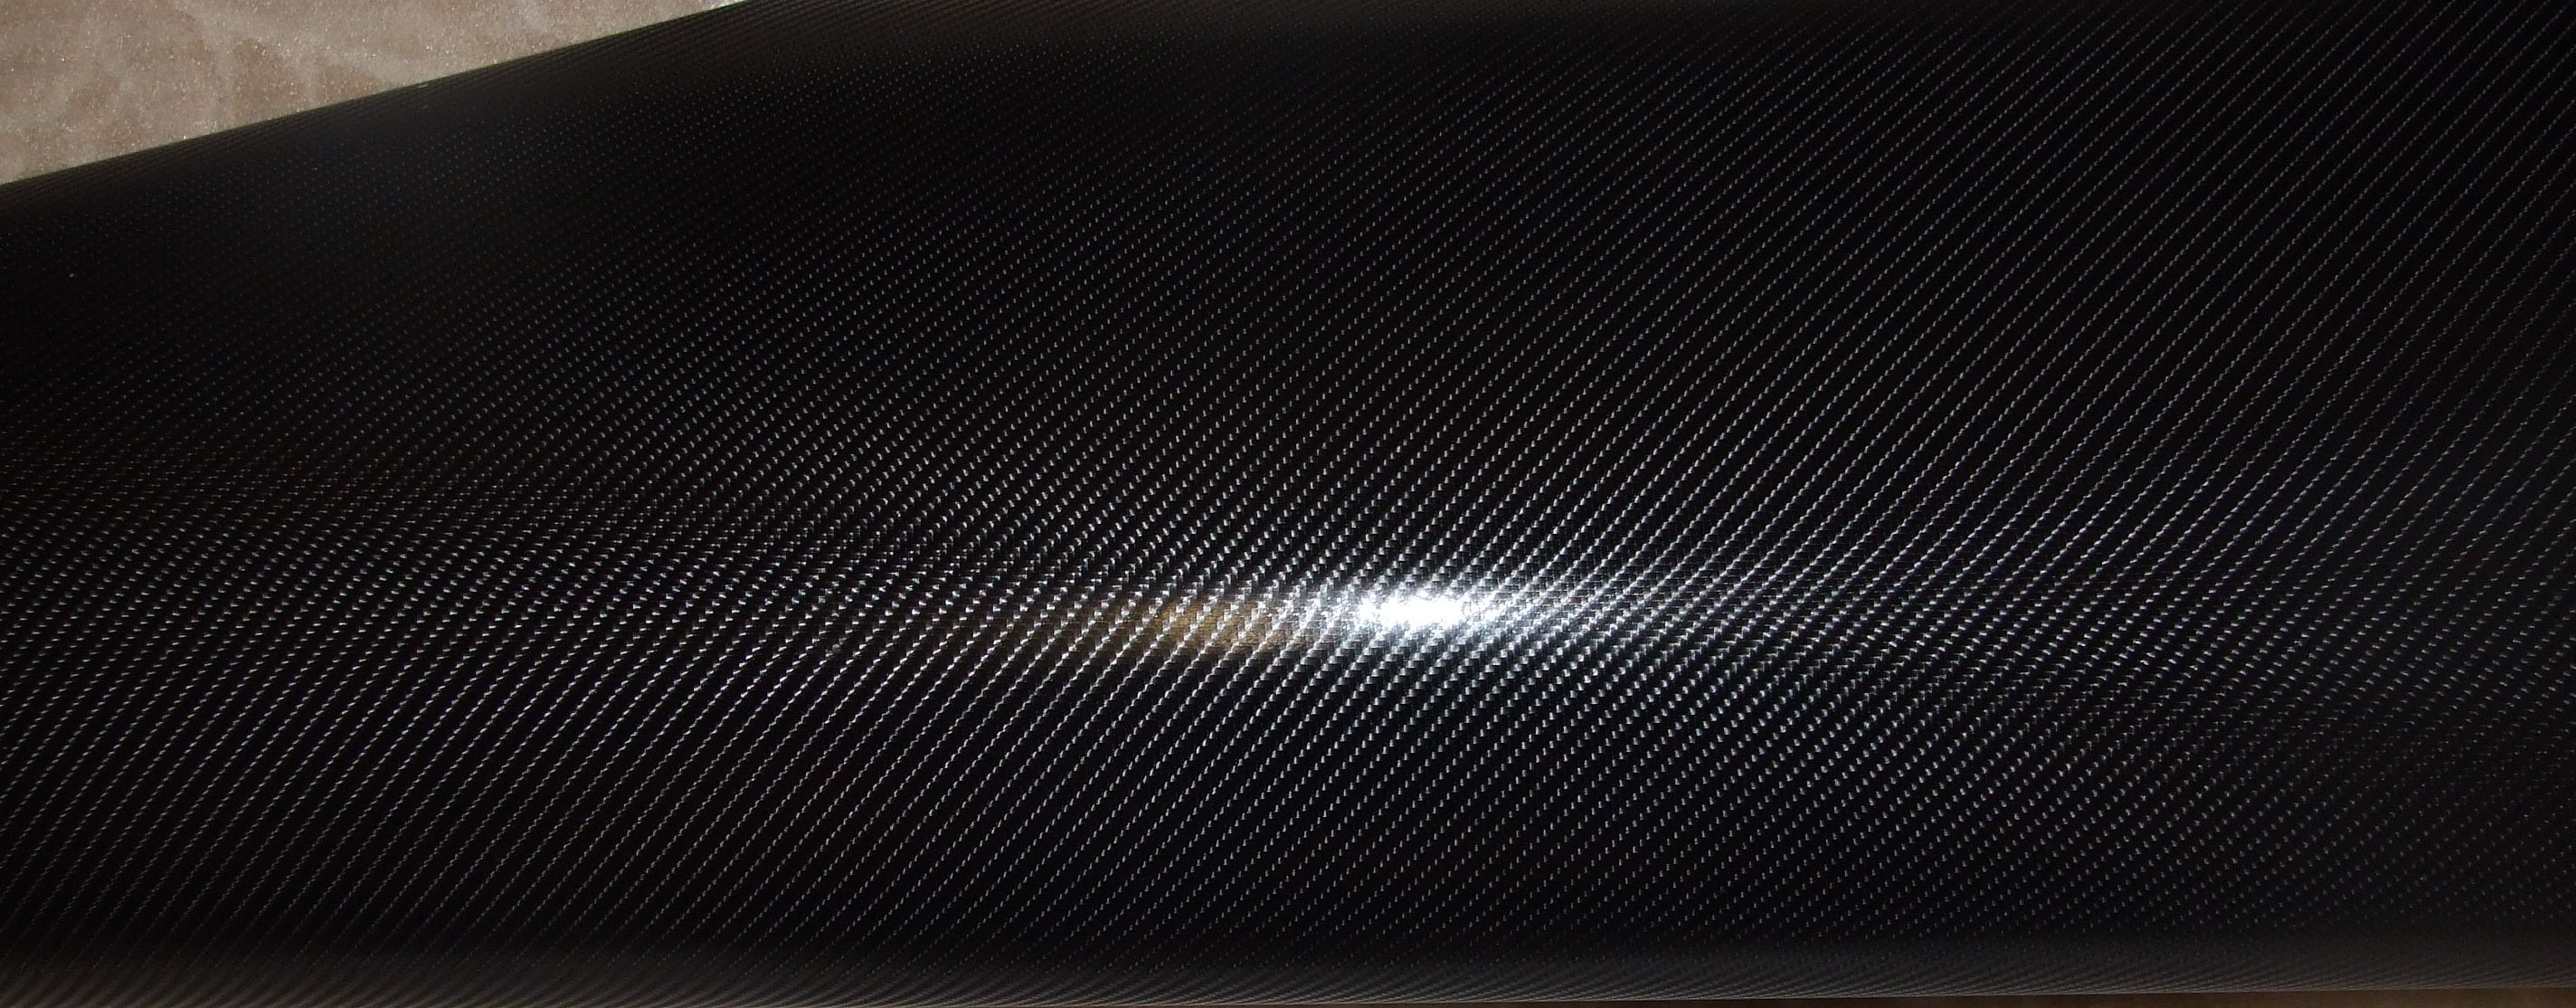 Xsun Carbon Plus 03% (металлизированная) черный